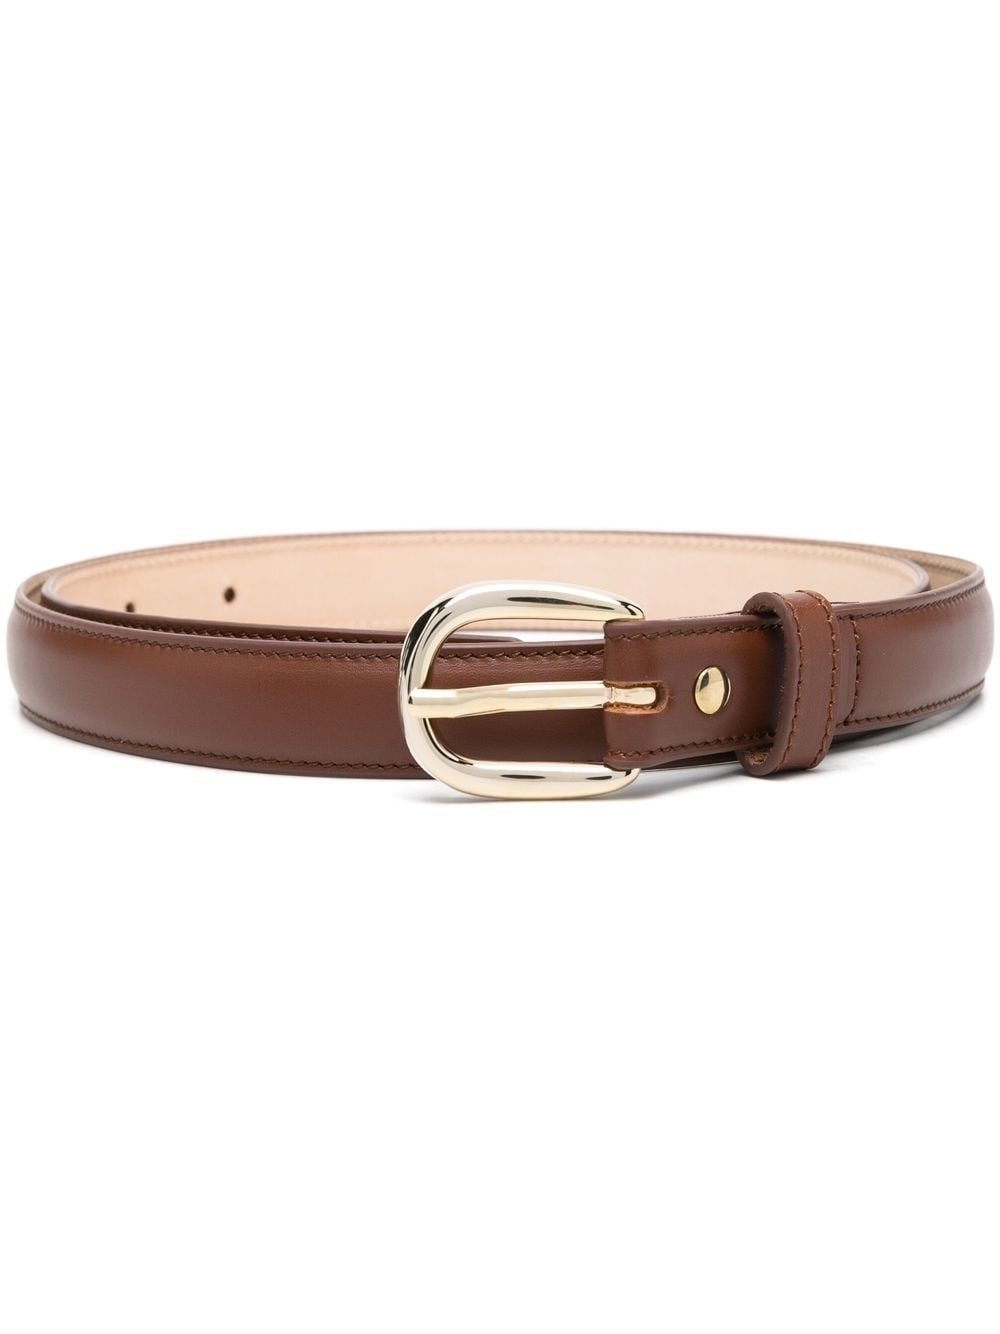 Rosette leather belt - 1